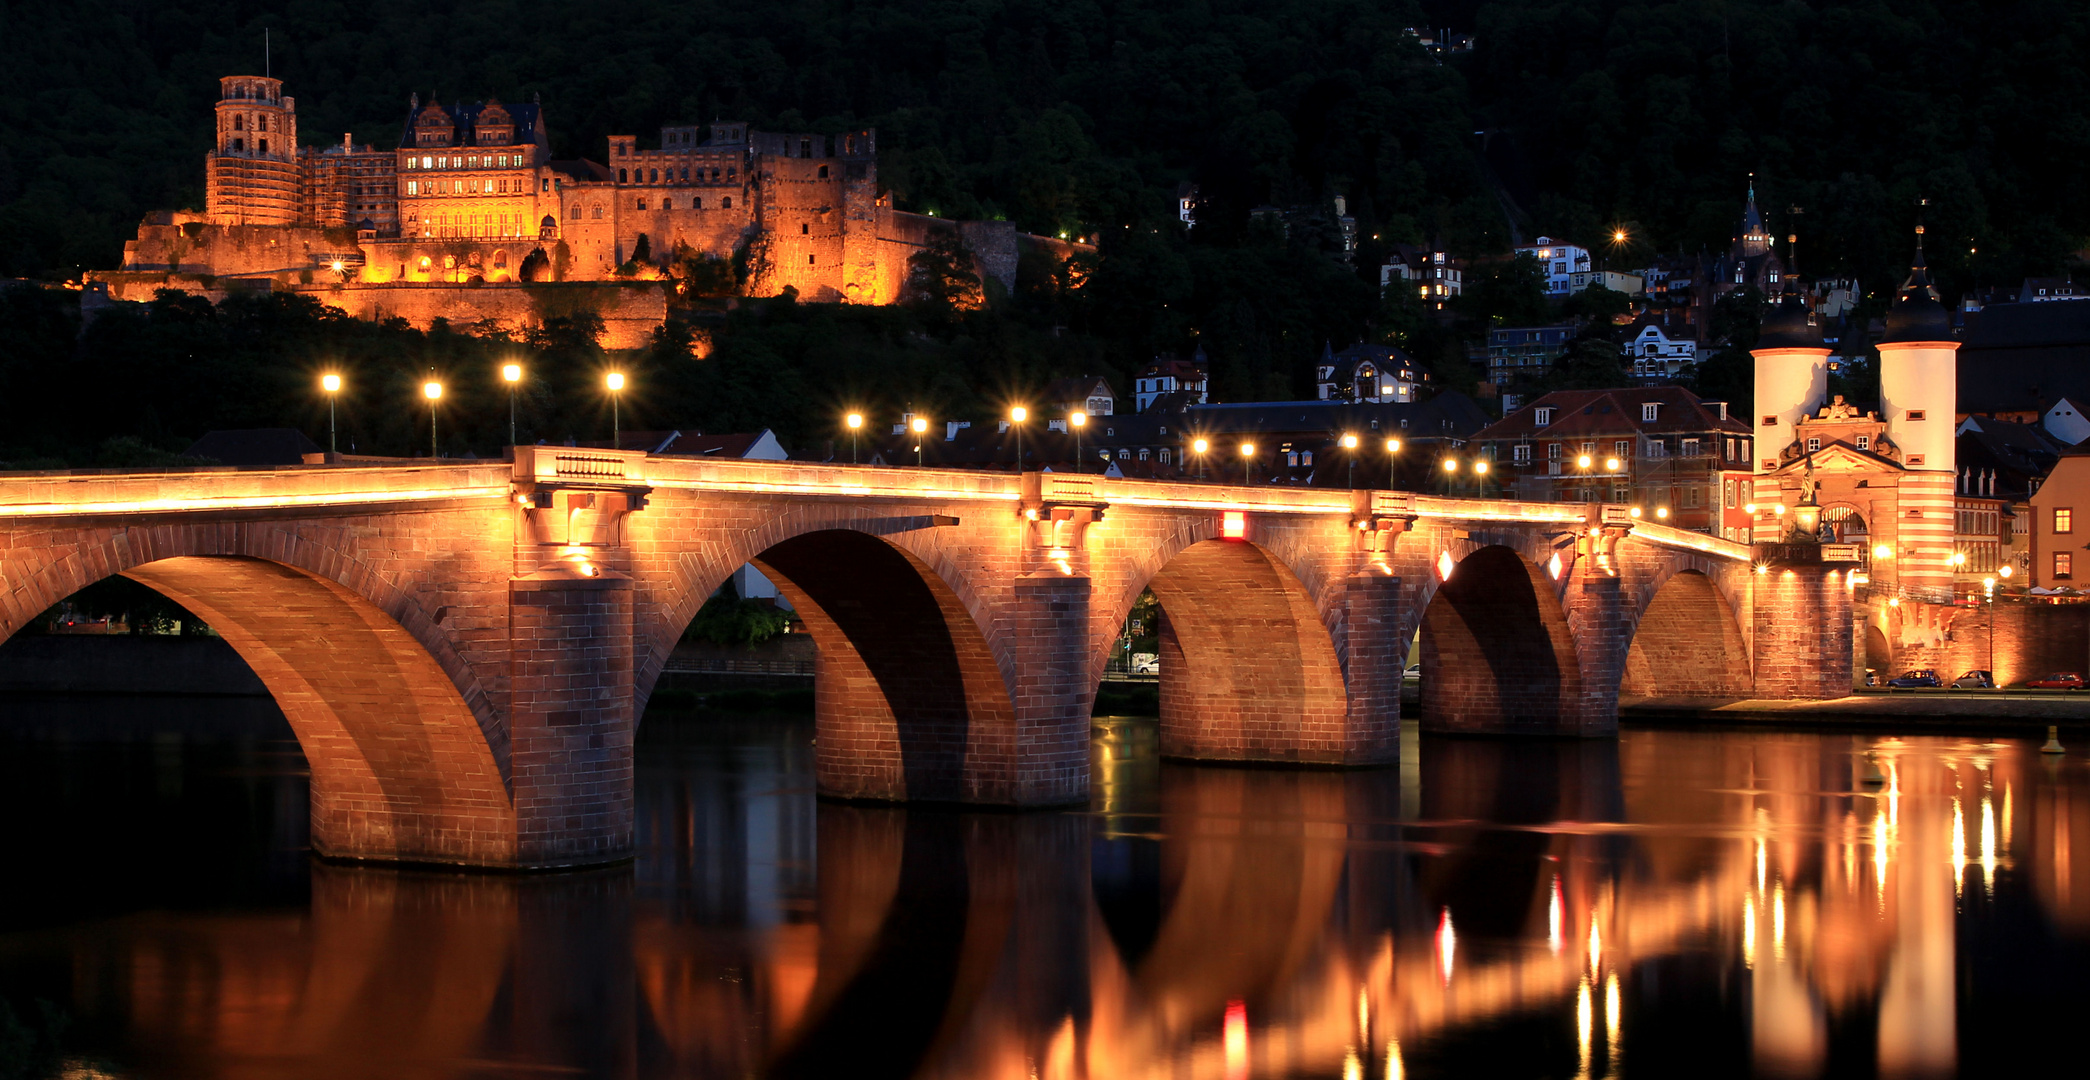 Alte Brücke in Heidelberg bei Nacht